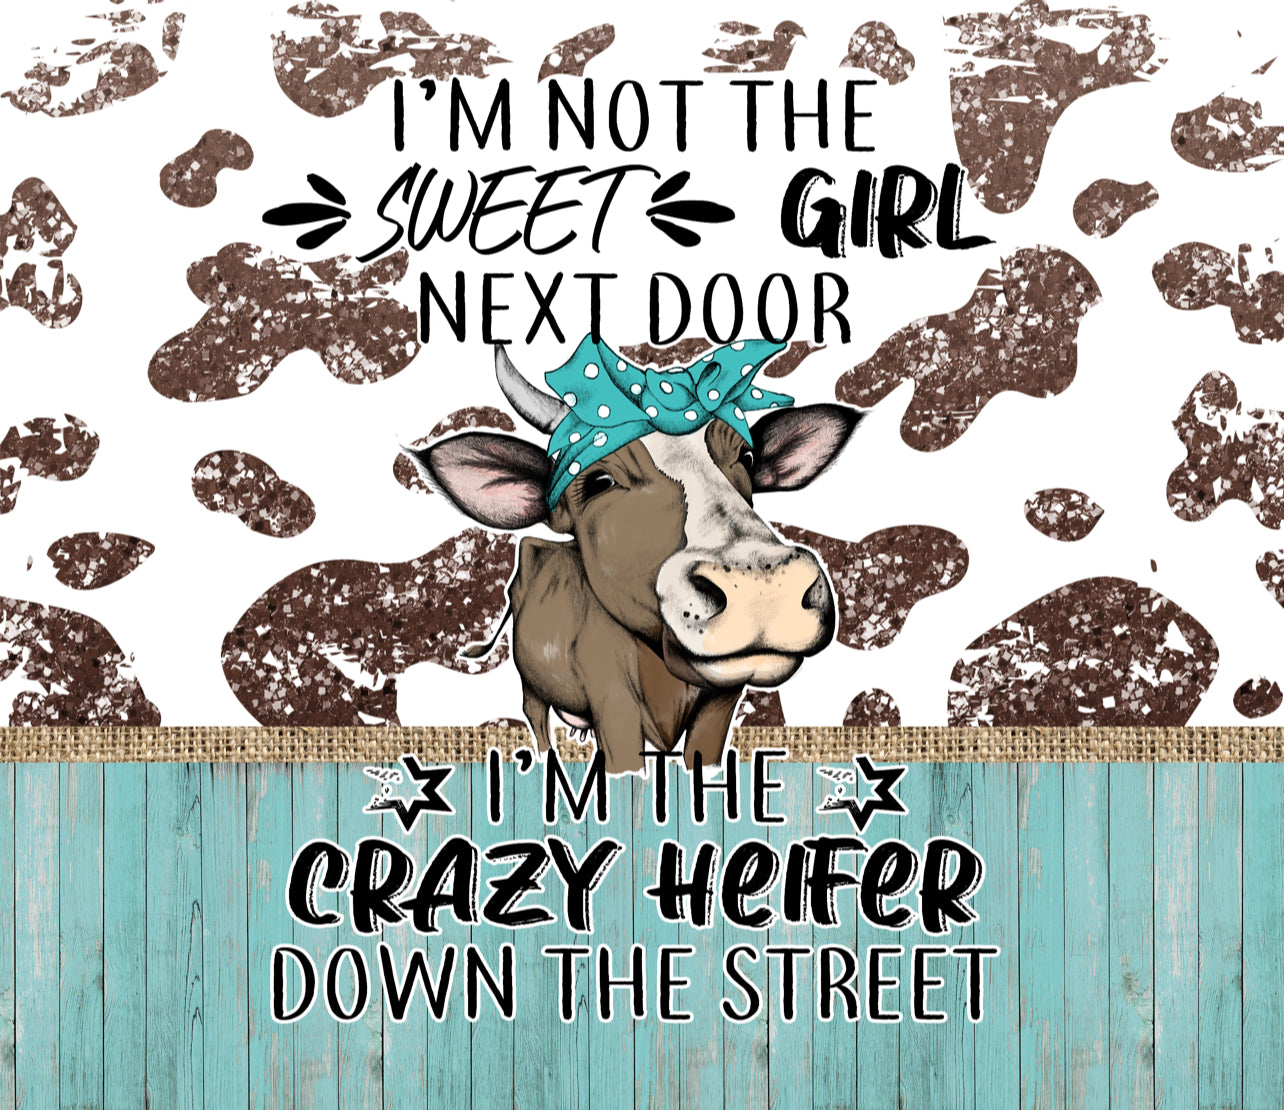 I’m the crazy heifer